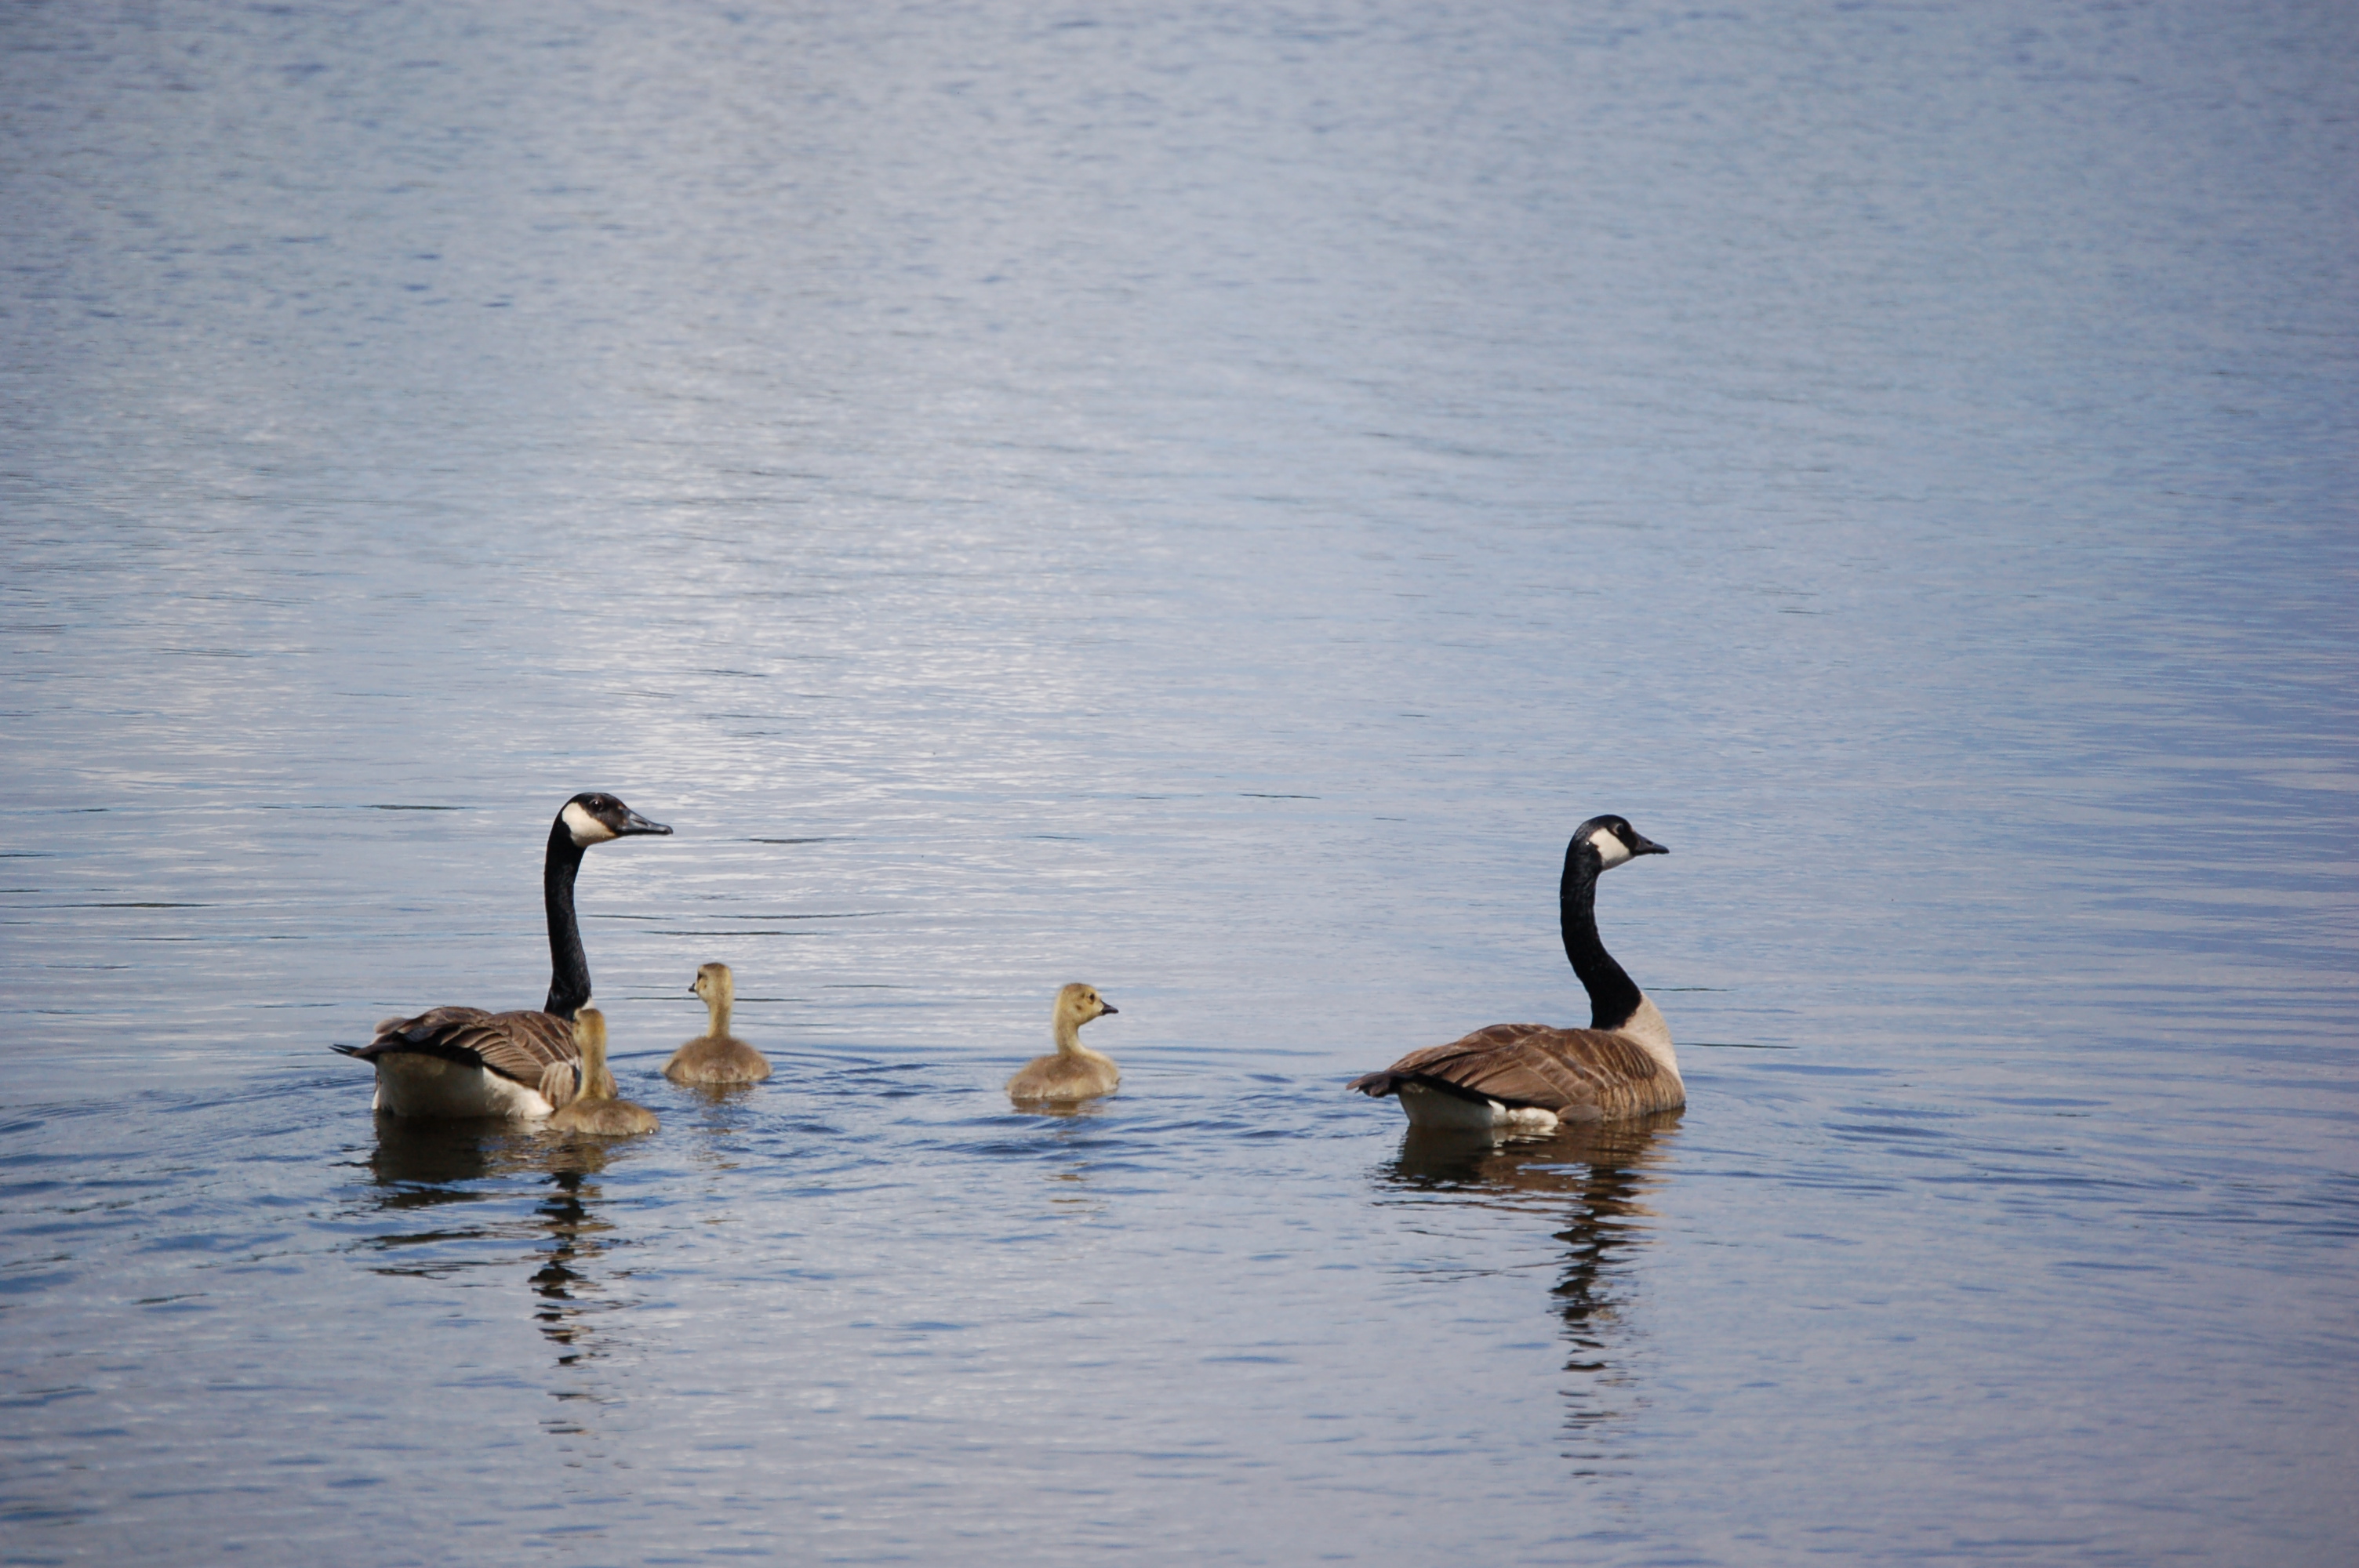 Seney National Wildlife Refuge Canada Geese Family